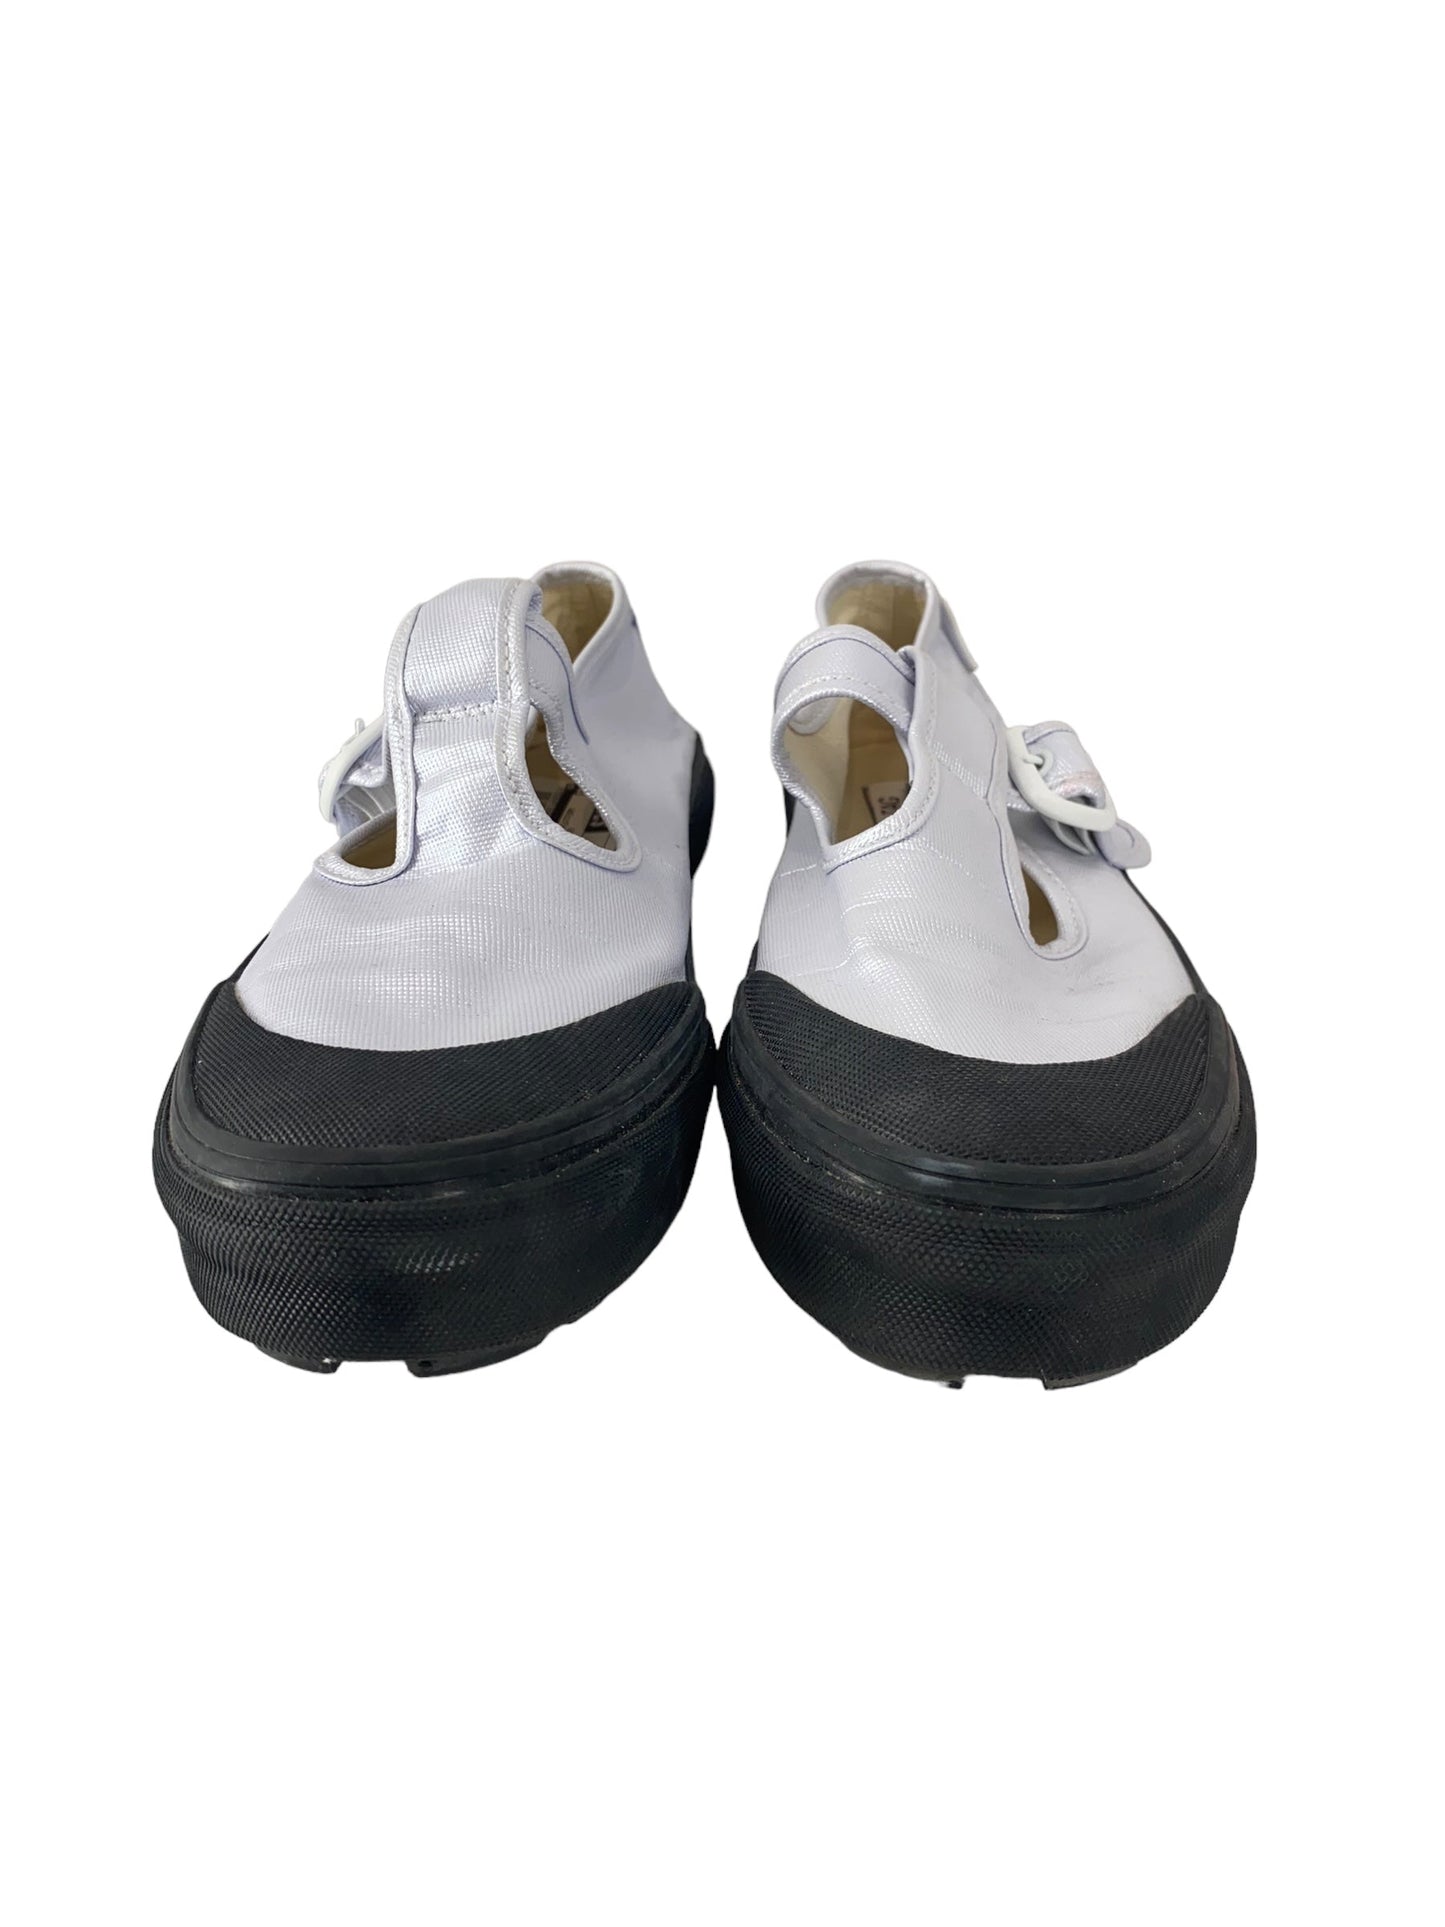 Black & Silver Shoes Heels Platform Vans, Size 8